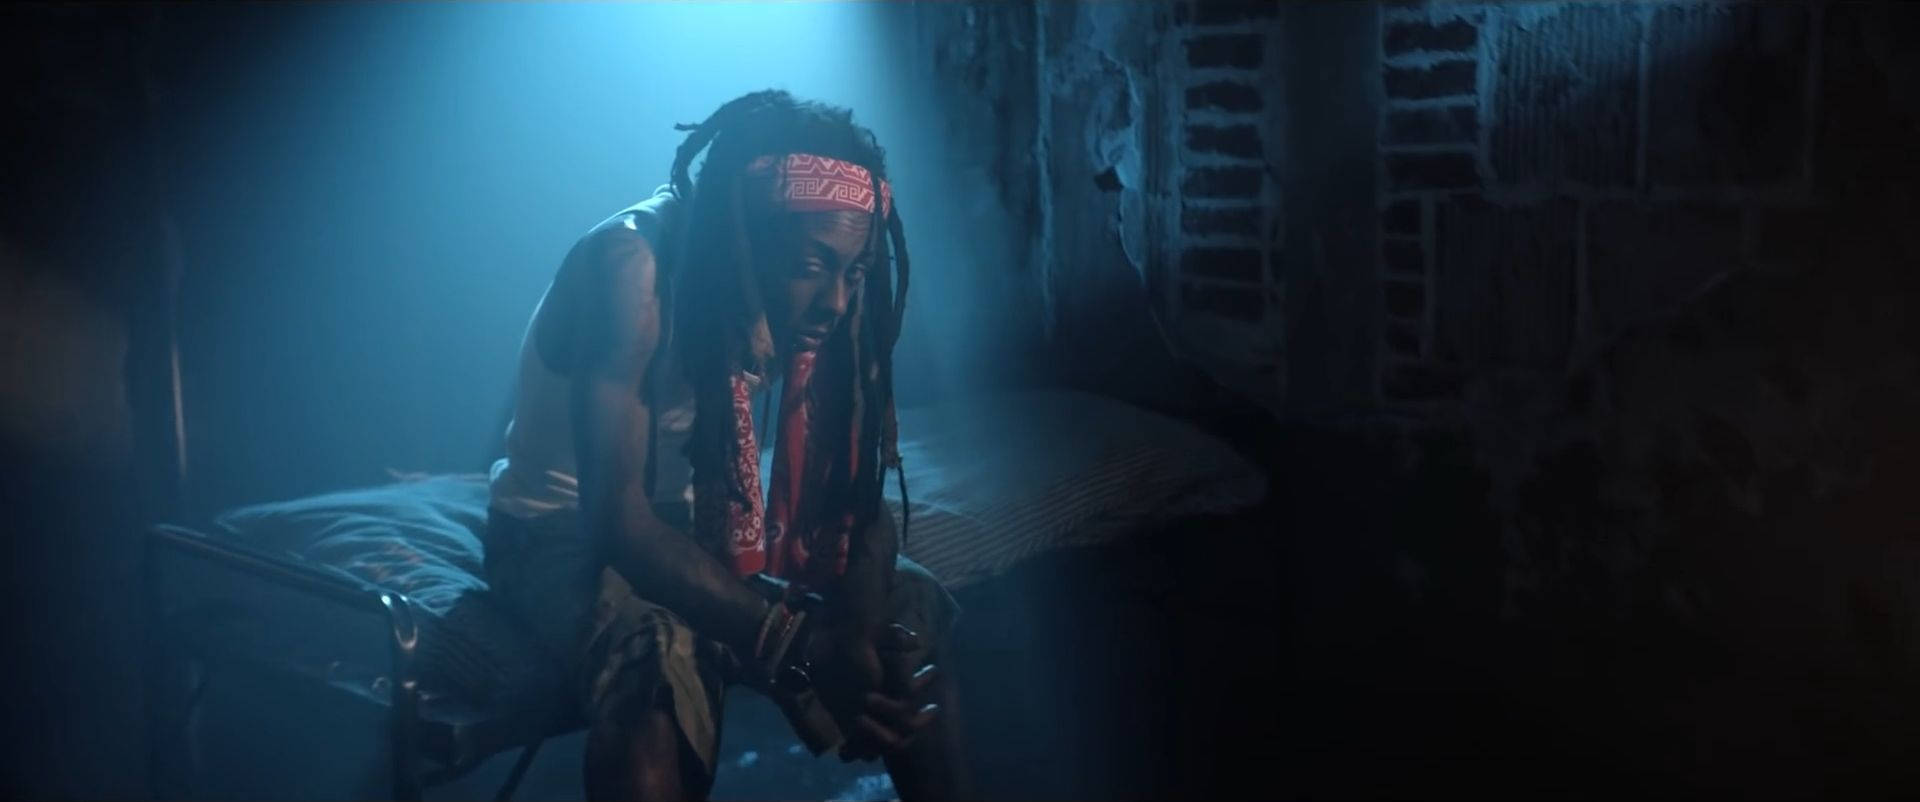 Lil Wayne - The Prodigy Of Rap Music